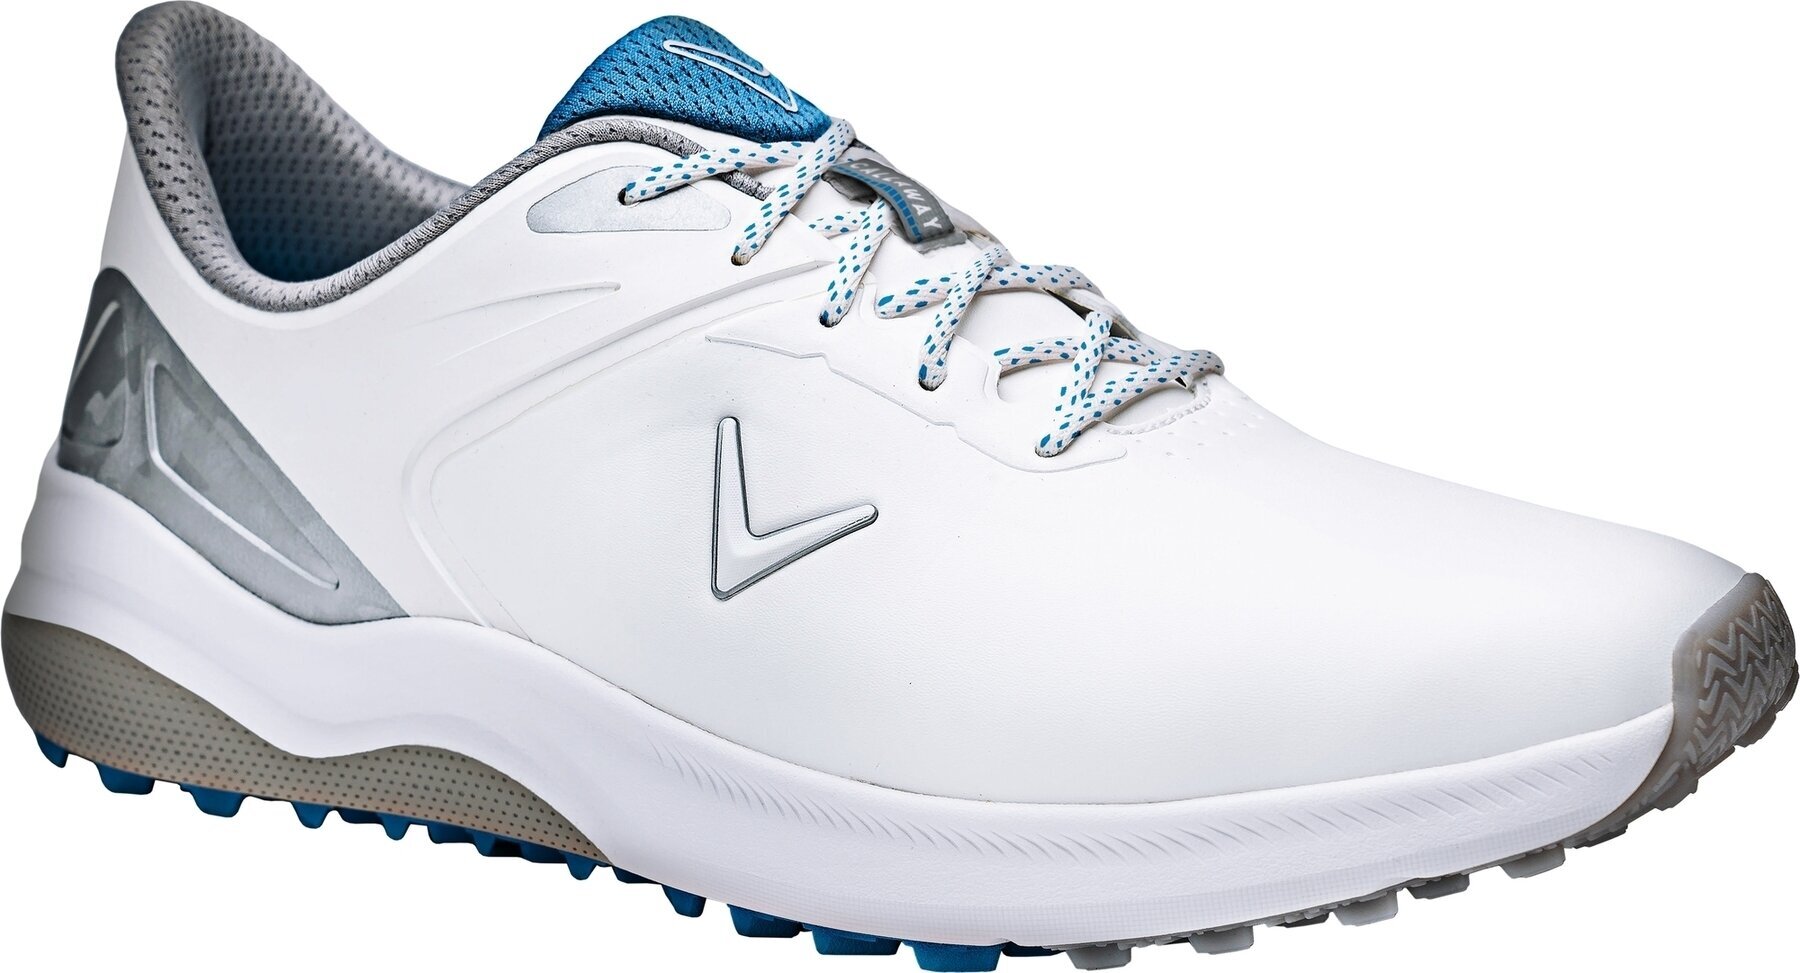 Ανδρικό Παπούτσι για Γκολφ Callaway Lazer Mens Golf Shoes White/Silver 42